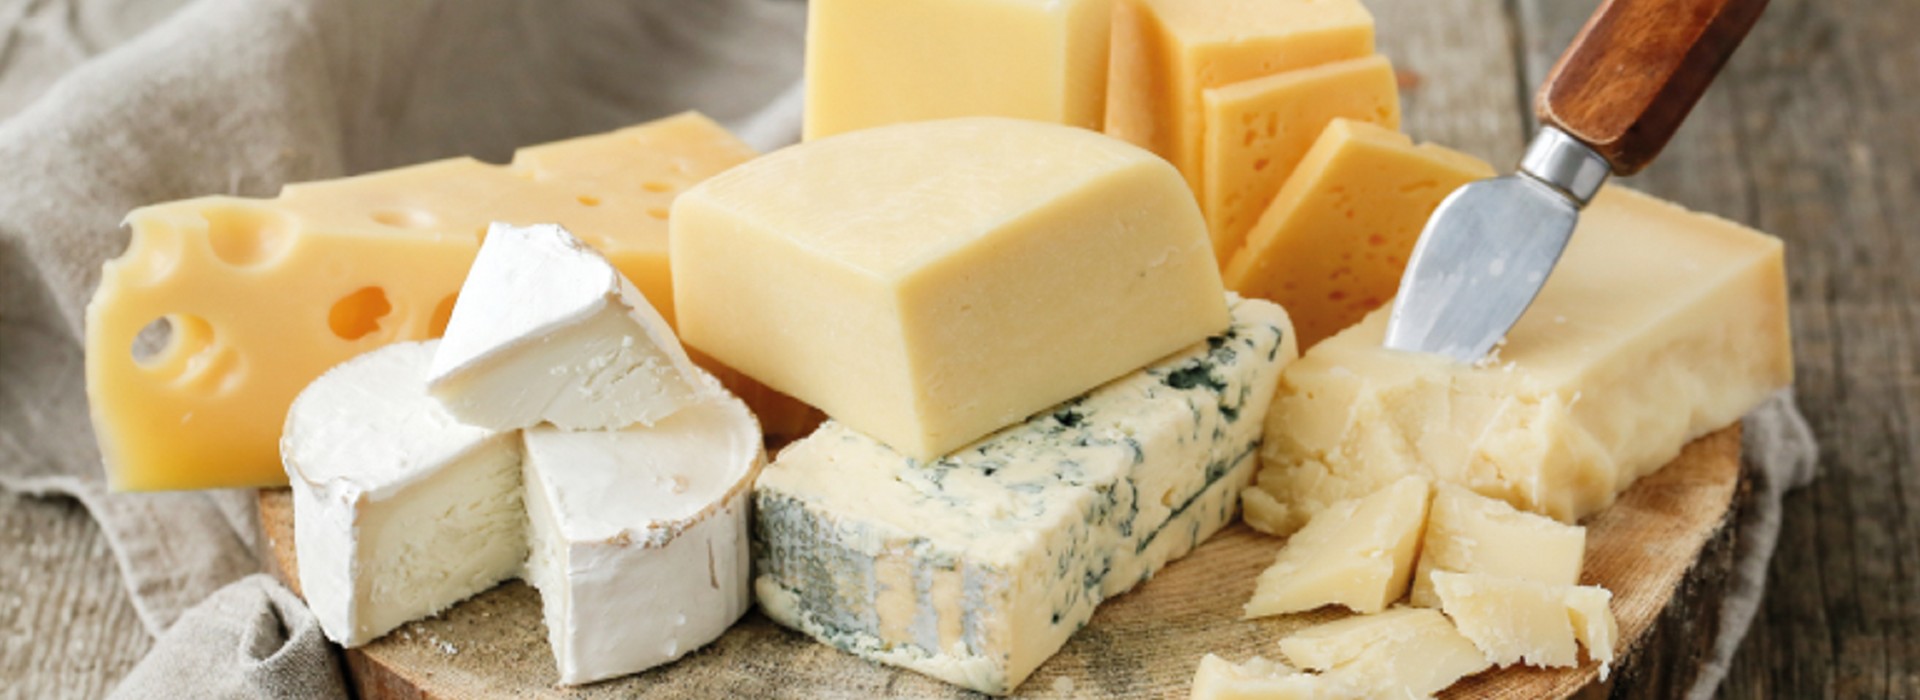 Grossiste/distributeur de fromage et produits laitiers